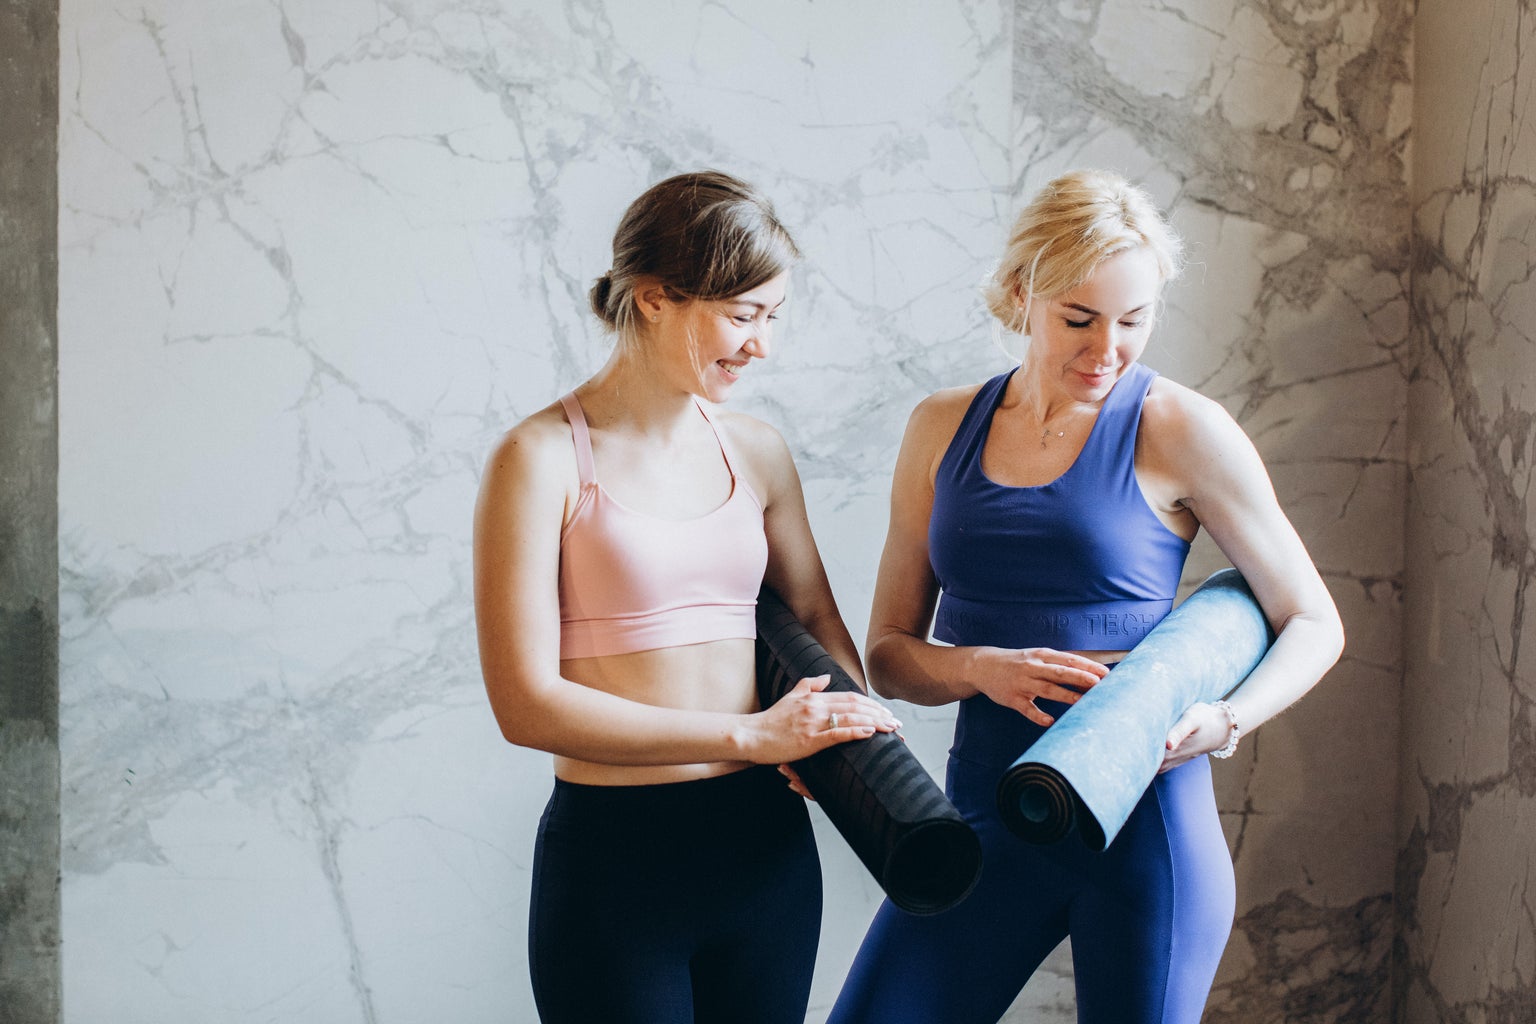 Two women in leggings holding yoga mats